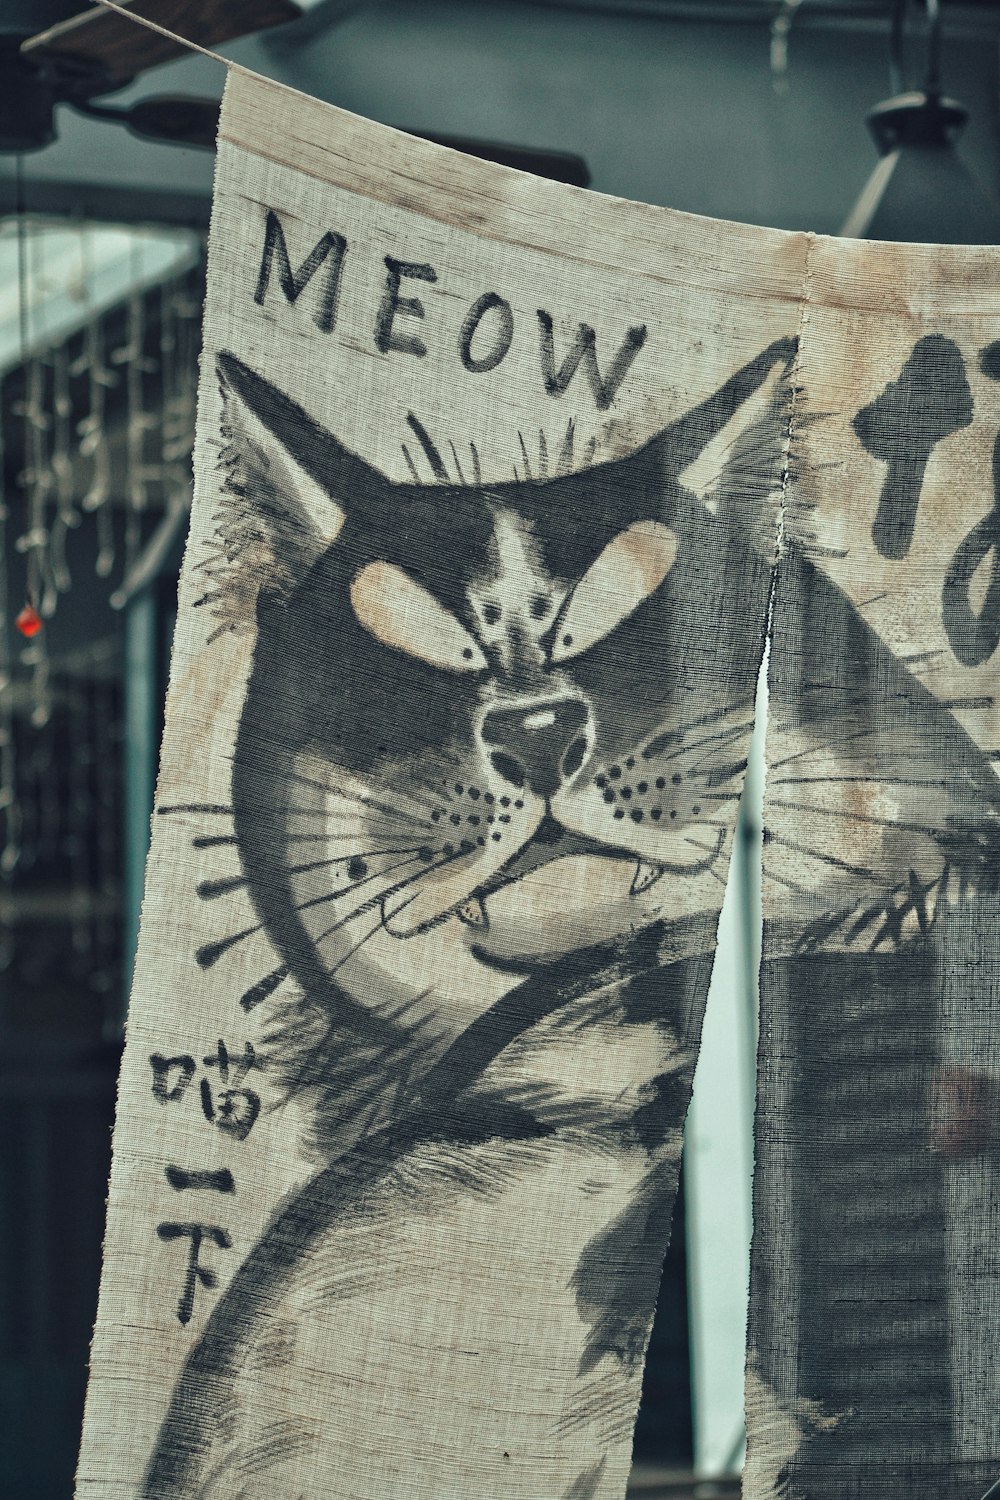 Meow artwork